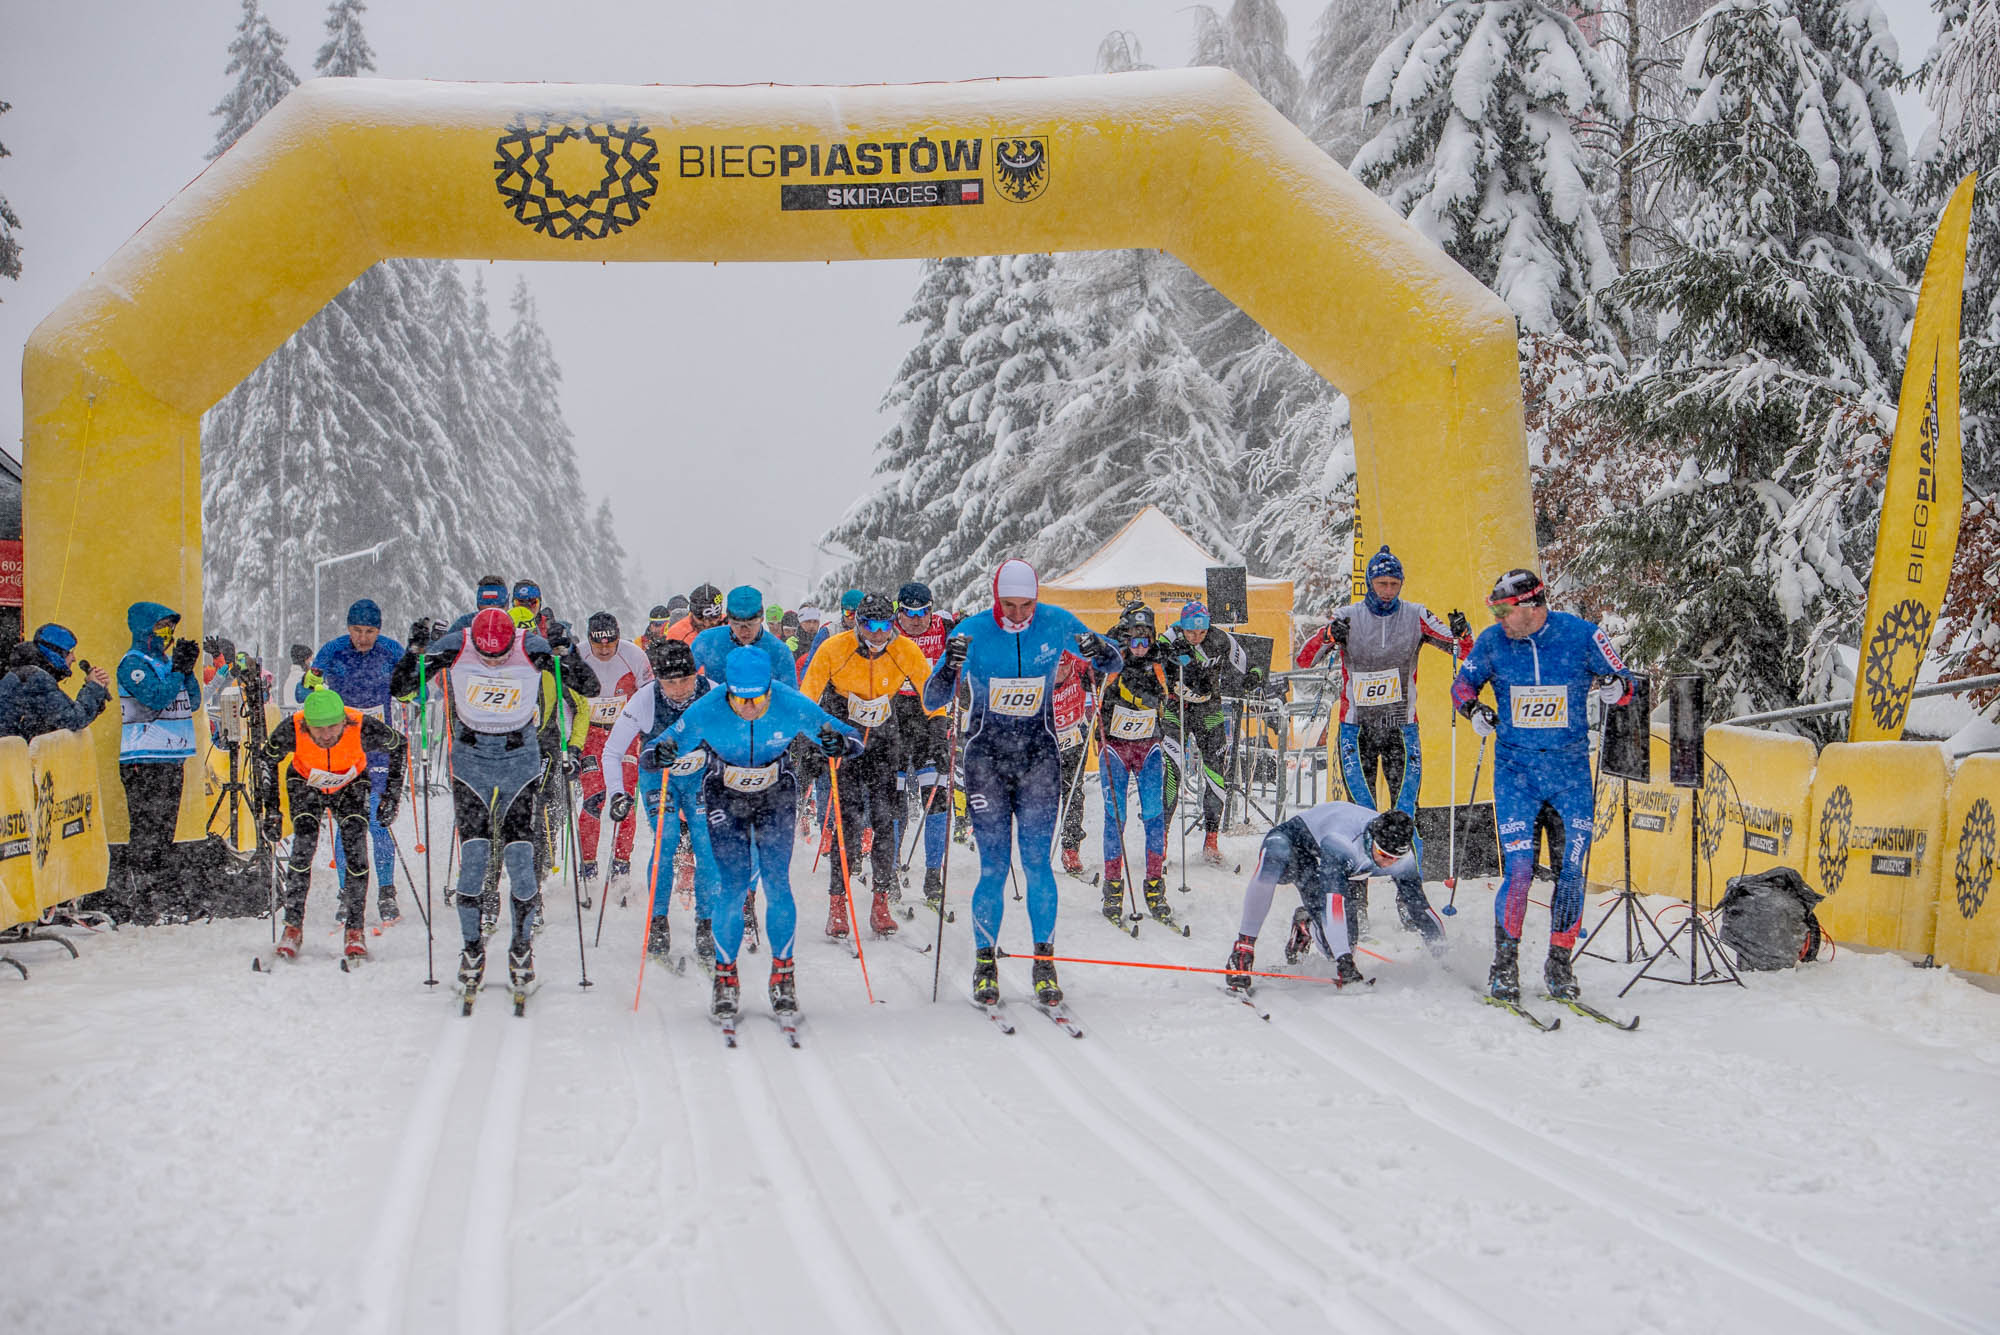 Nieco ponad 1,5 setki biegaczy przez 12 kilometrów cieszyło się śniegiem (fot. Krzysztof Gulbinowicz)